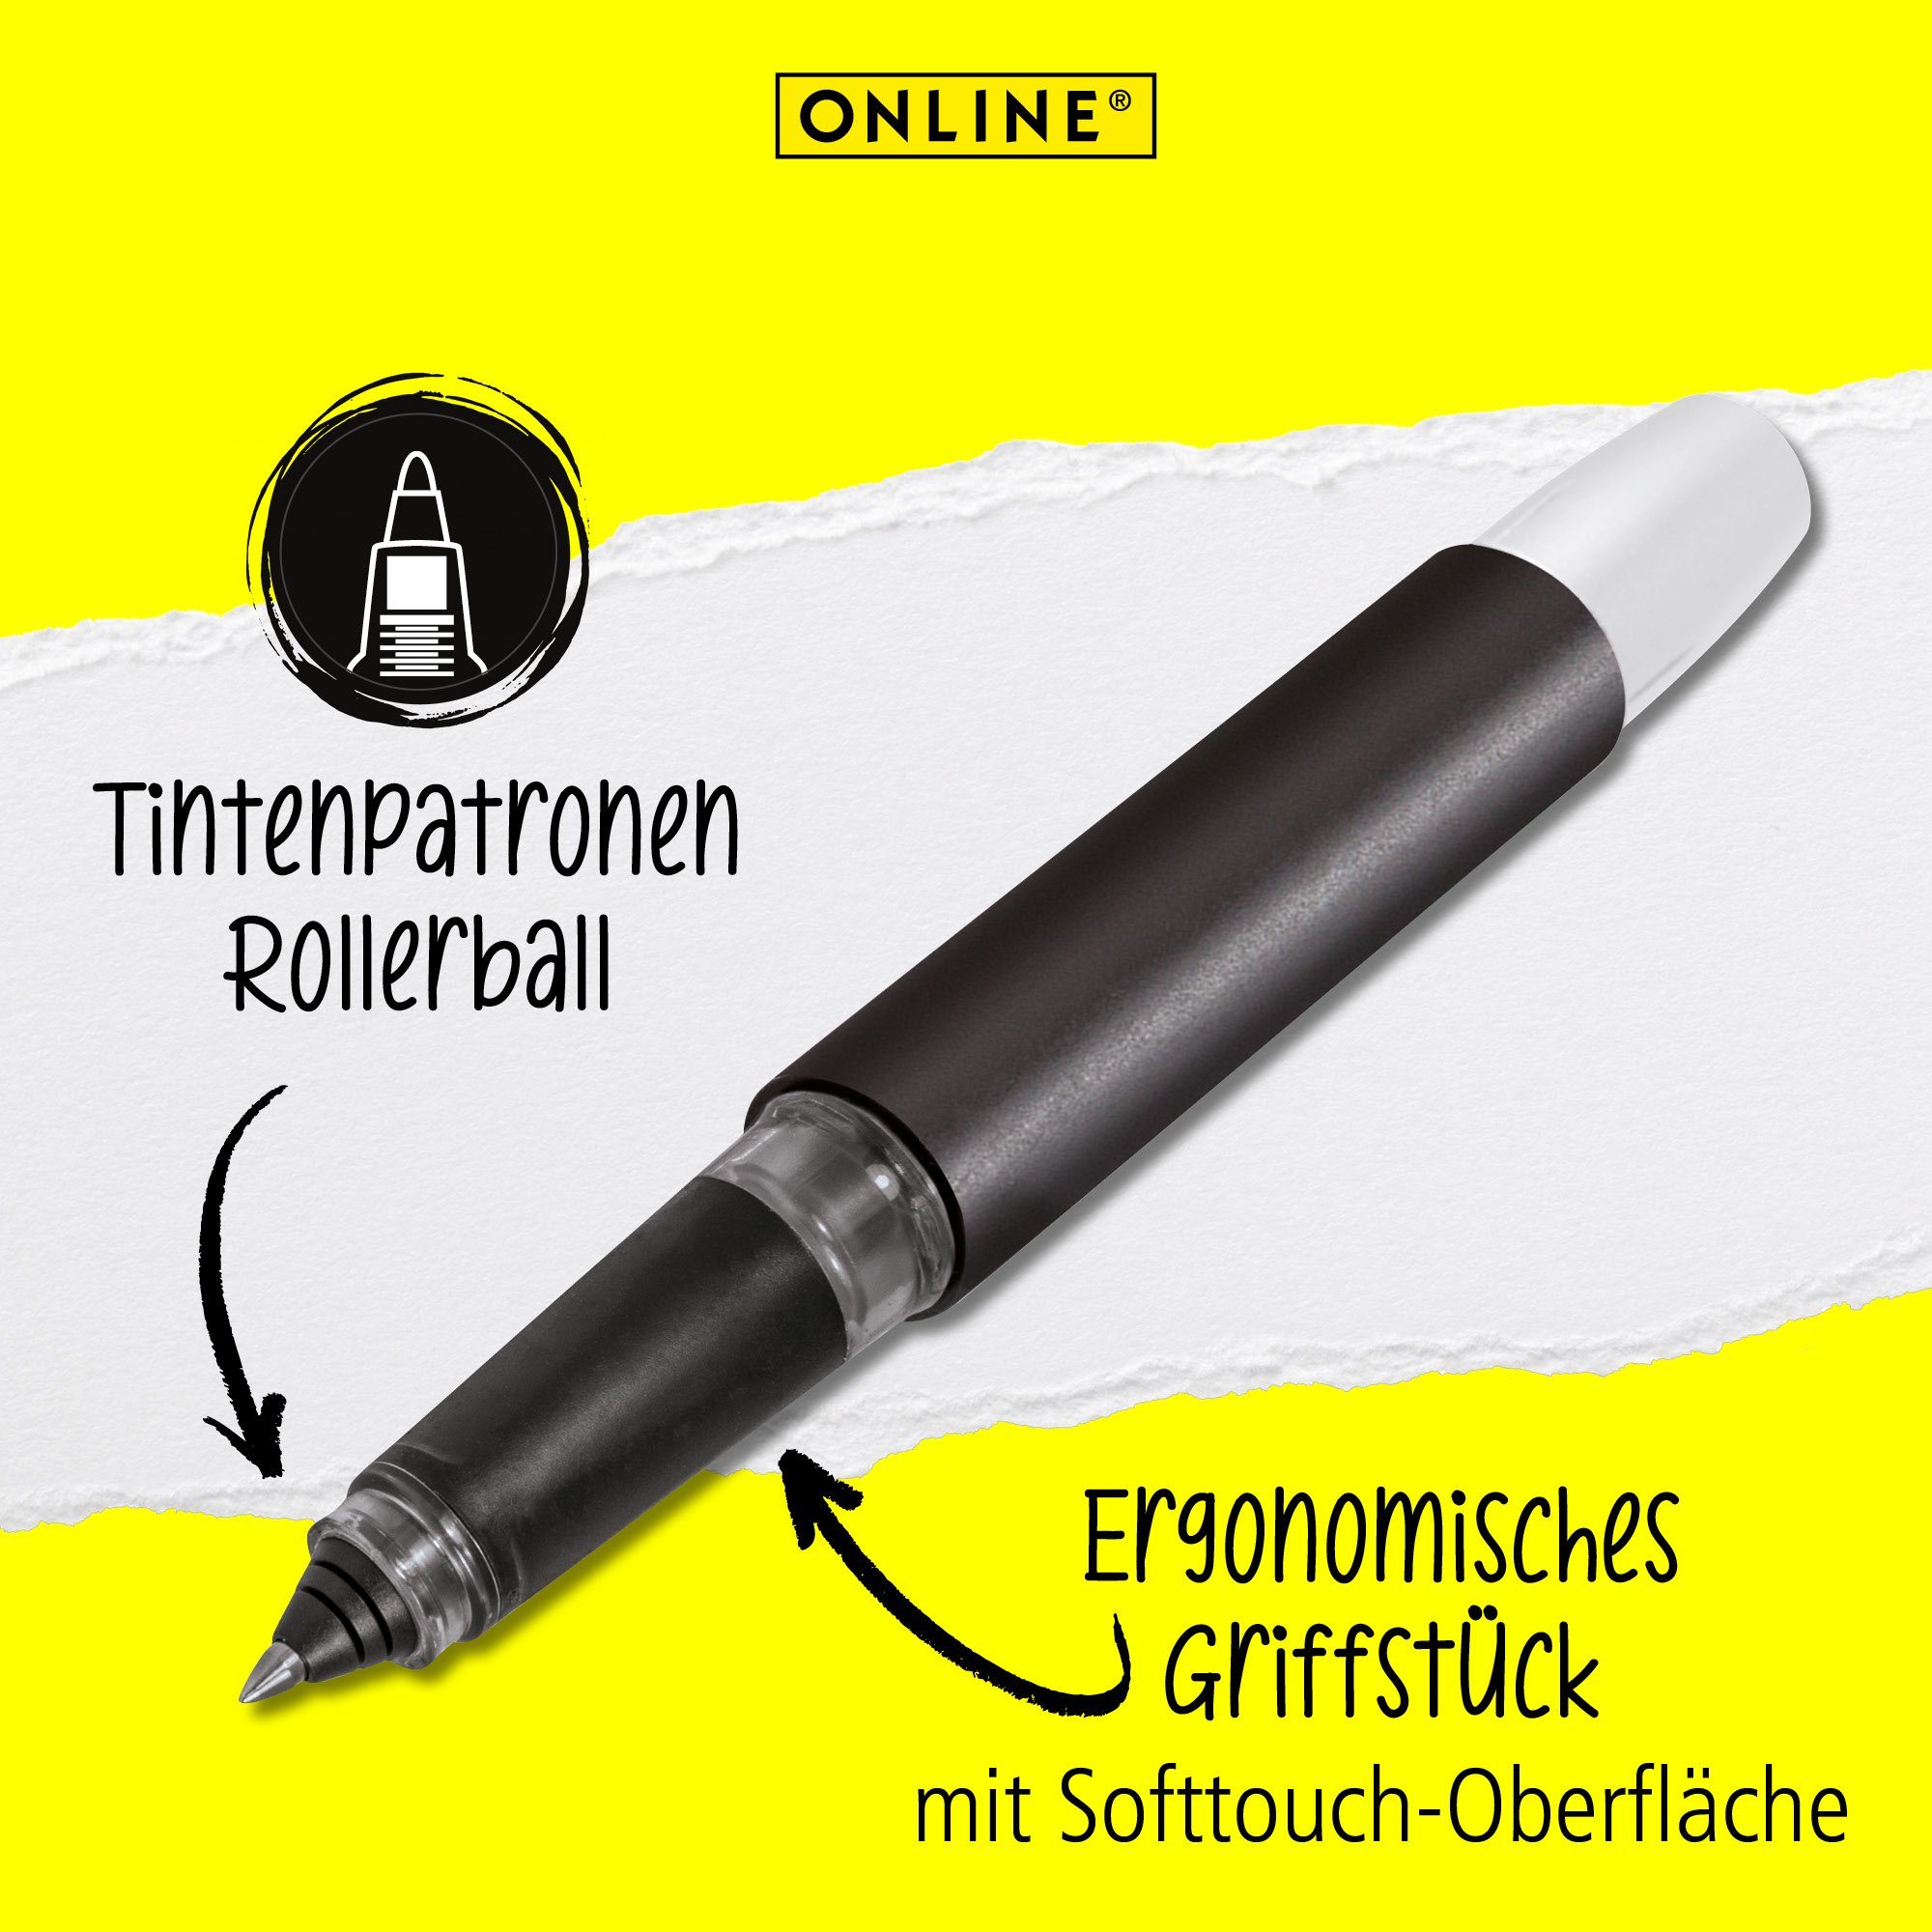 Online Pen Tintenroller Black ideal Schule, Tintenpatronen-Rollerball, Deutschland Campus die hergestellt in ergonomisch, für